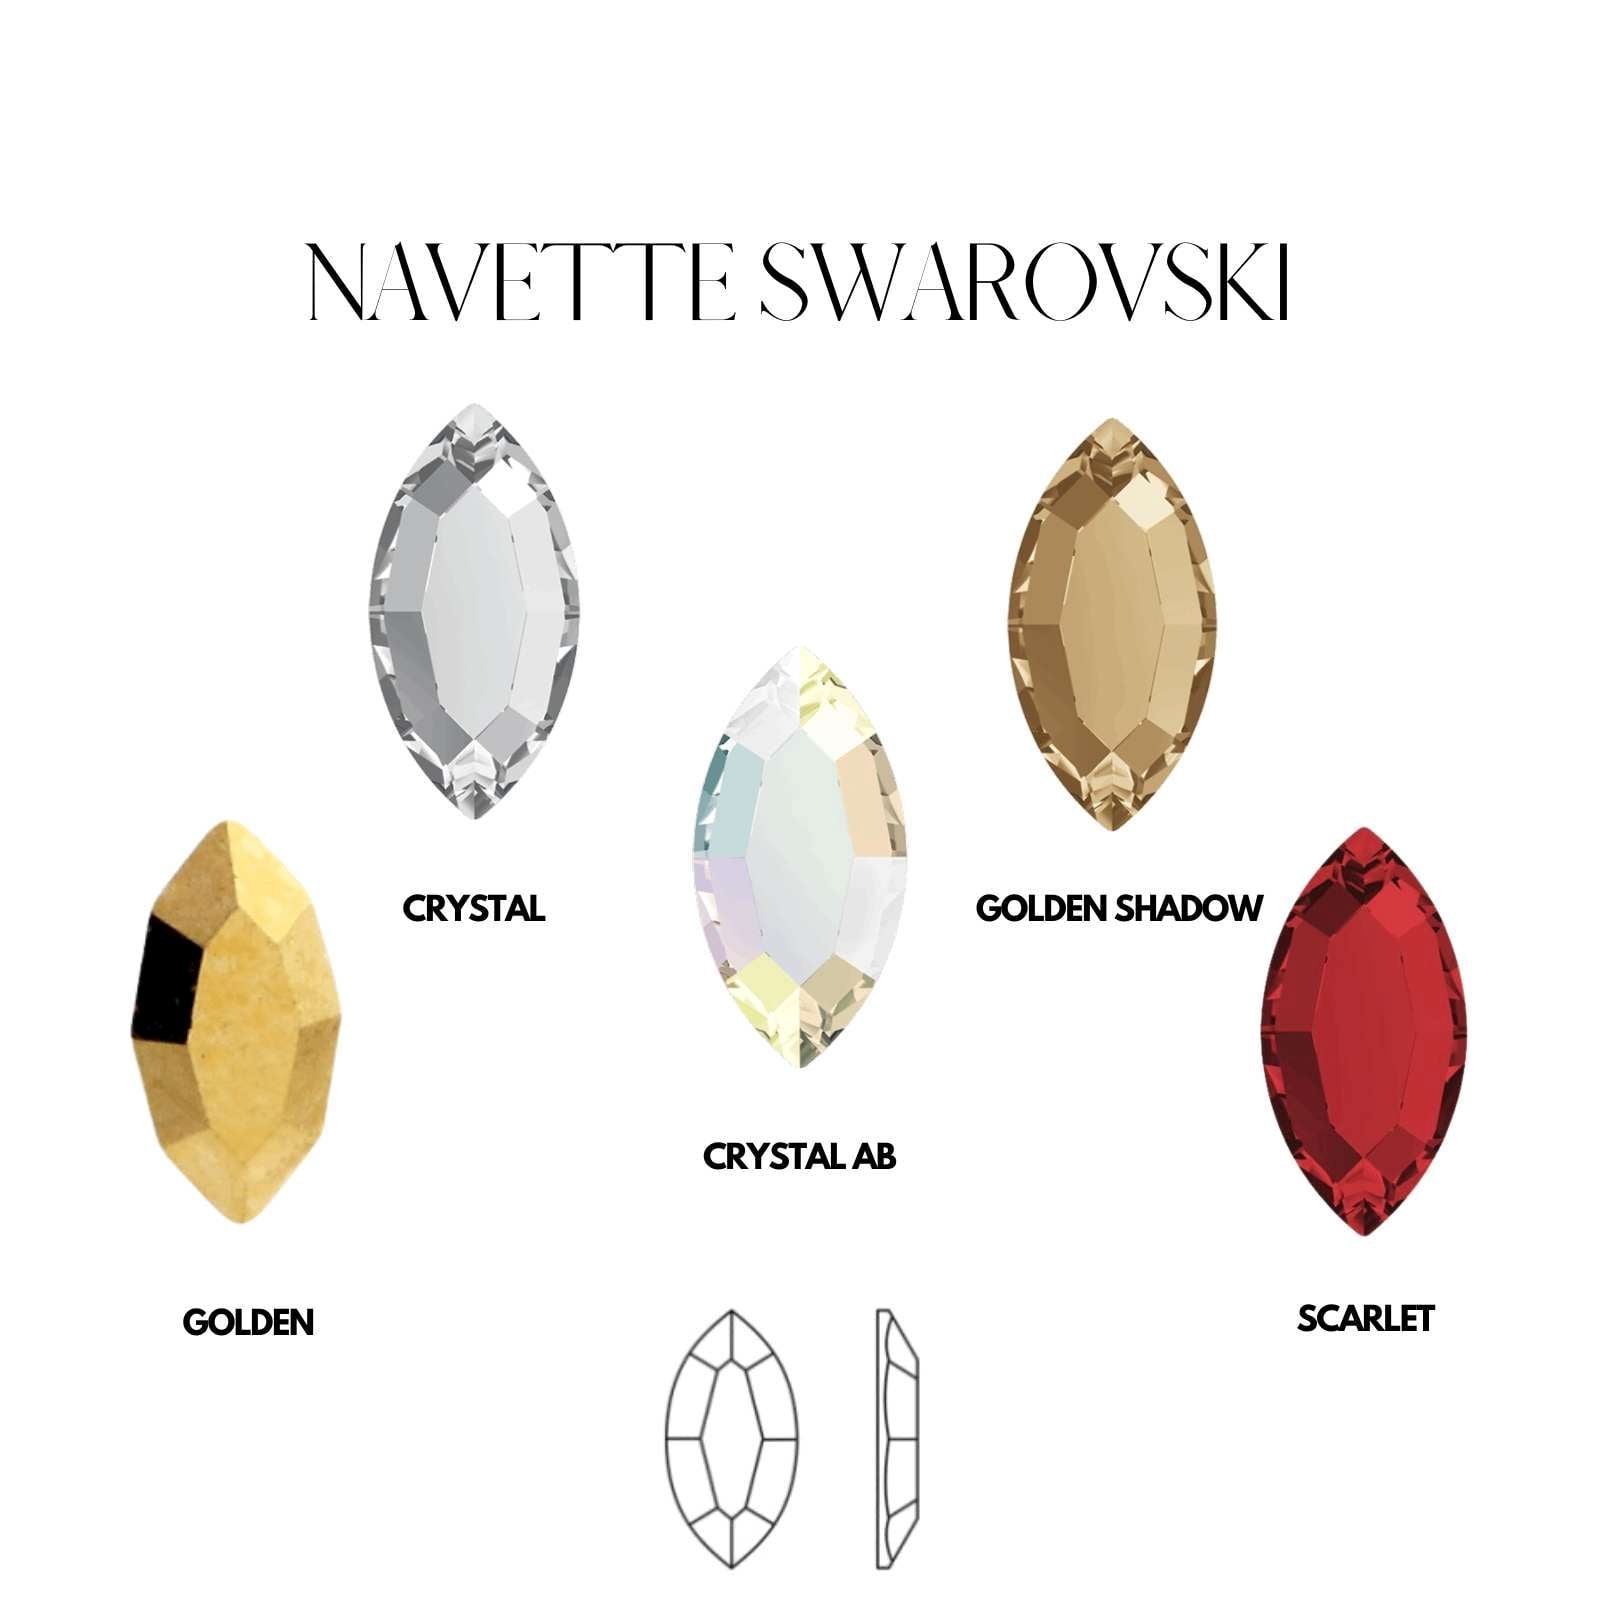 NAVETTE - SWAROVSKI